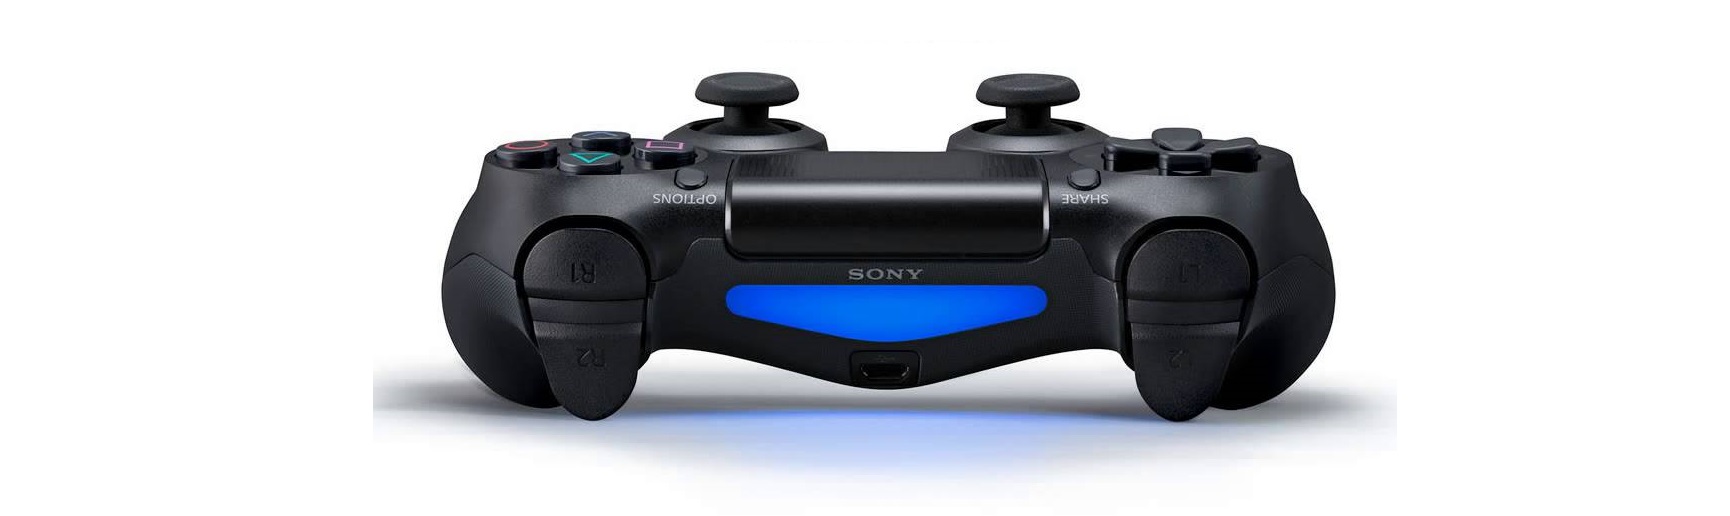 Tay cầm chơi game không dây PS4 Sony DUALSHOCK 4 Controller Steel Black CUH-ZCT2G21 tích hợp cảm biến chuyển động